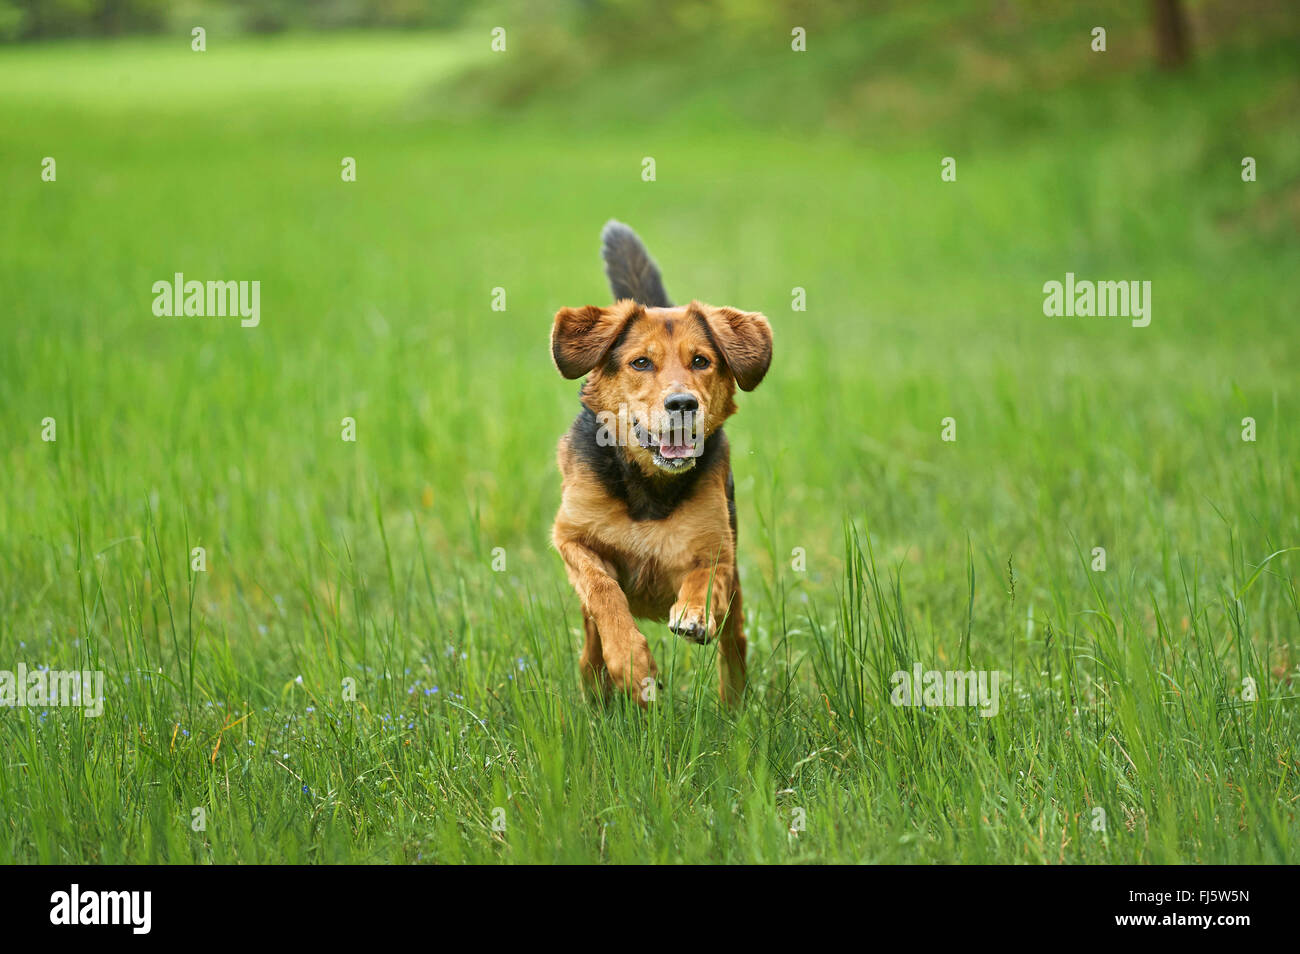 Perro de raza mixta (Canis lupus familiaris) f., pasear perros de raza mixta en un prado, Alemania Foto de stock